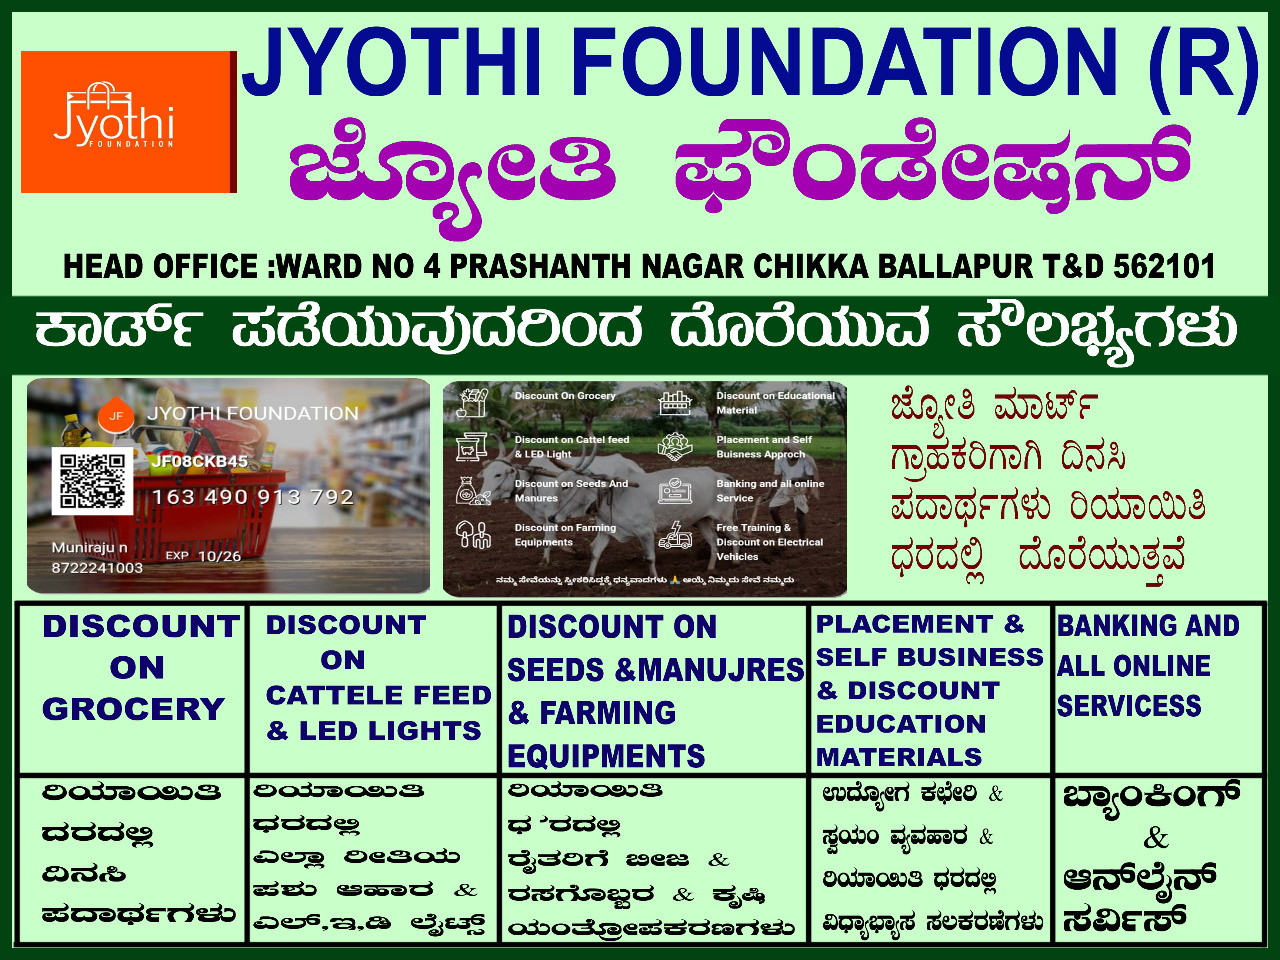 /media/Jyothi/1NGO-00080-Jyothi Foundation-Main Page.jpeg